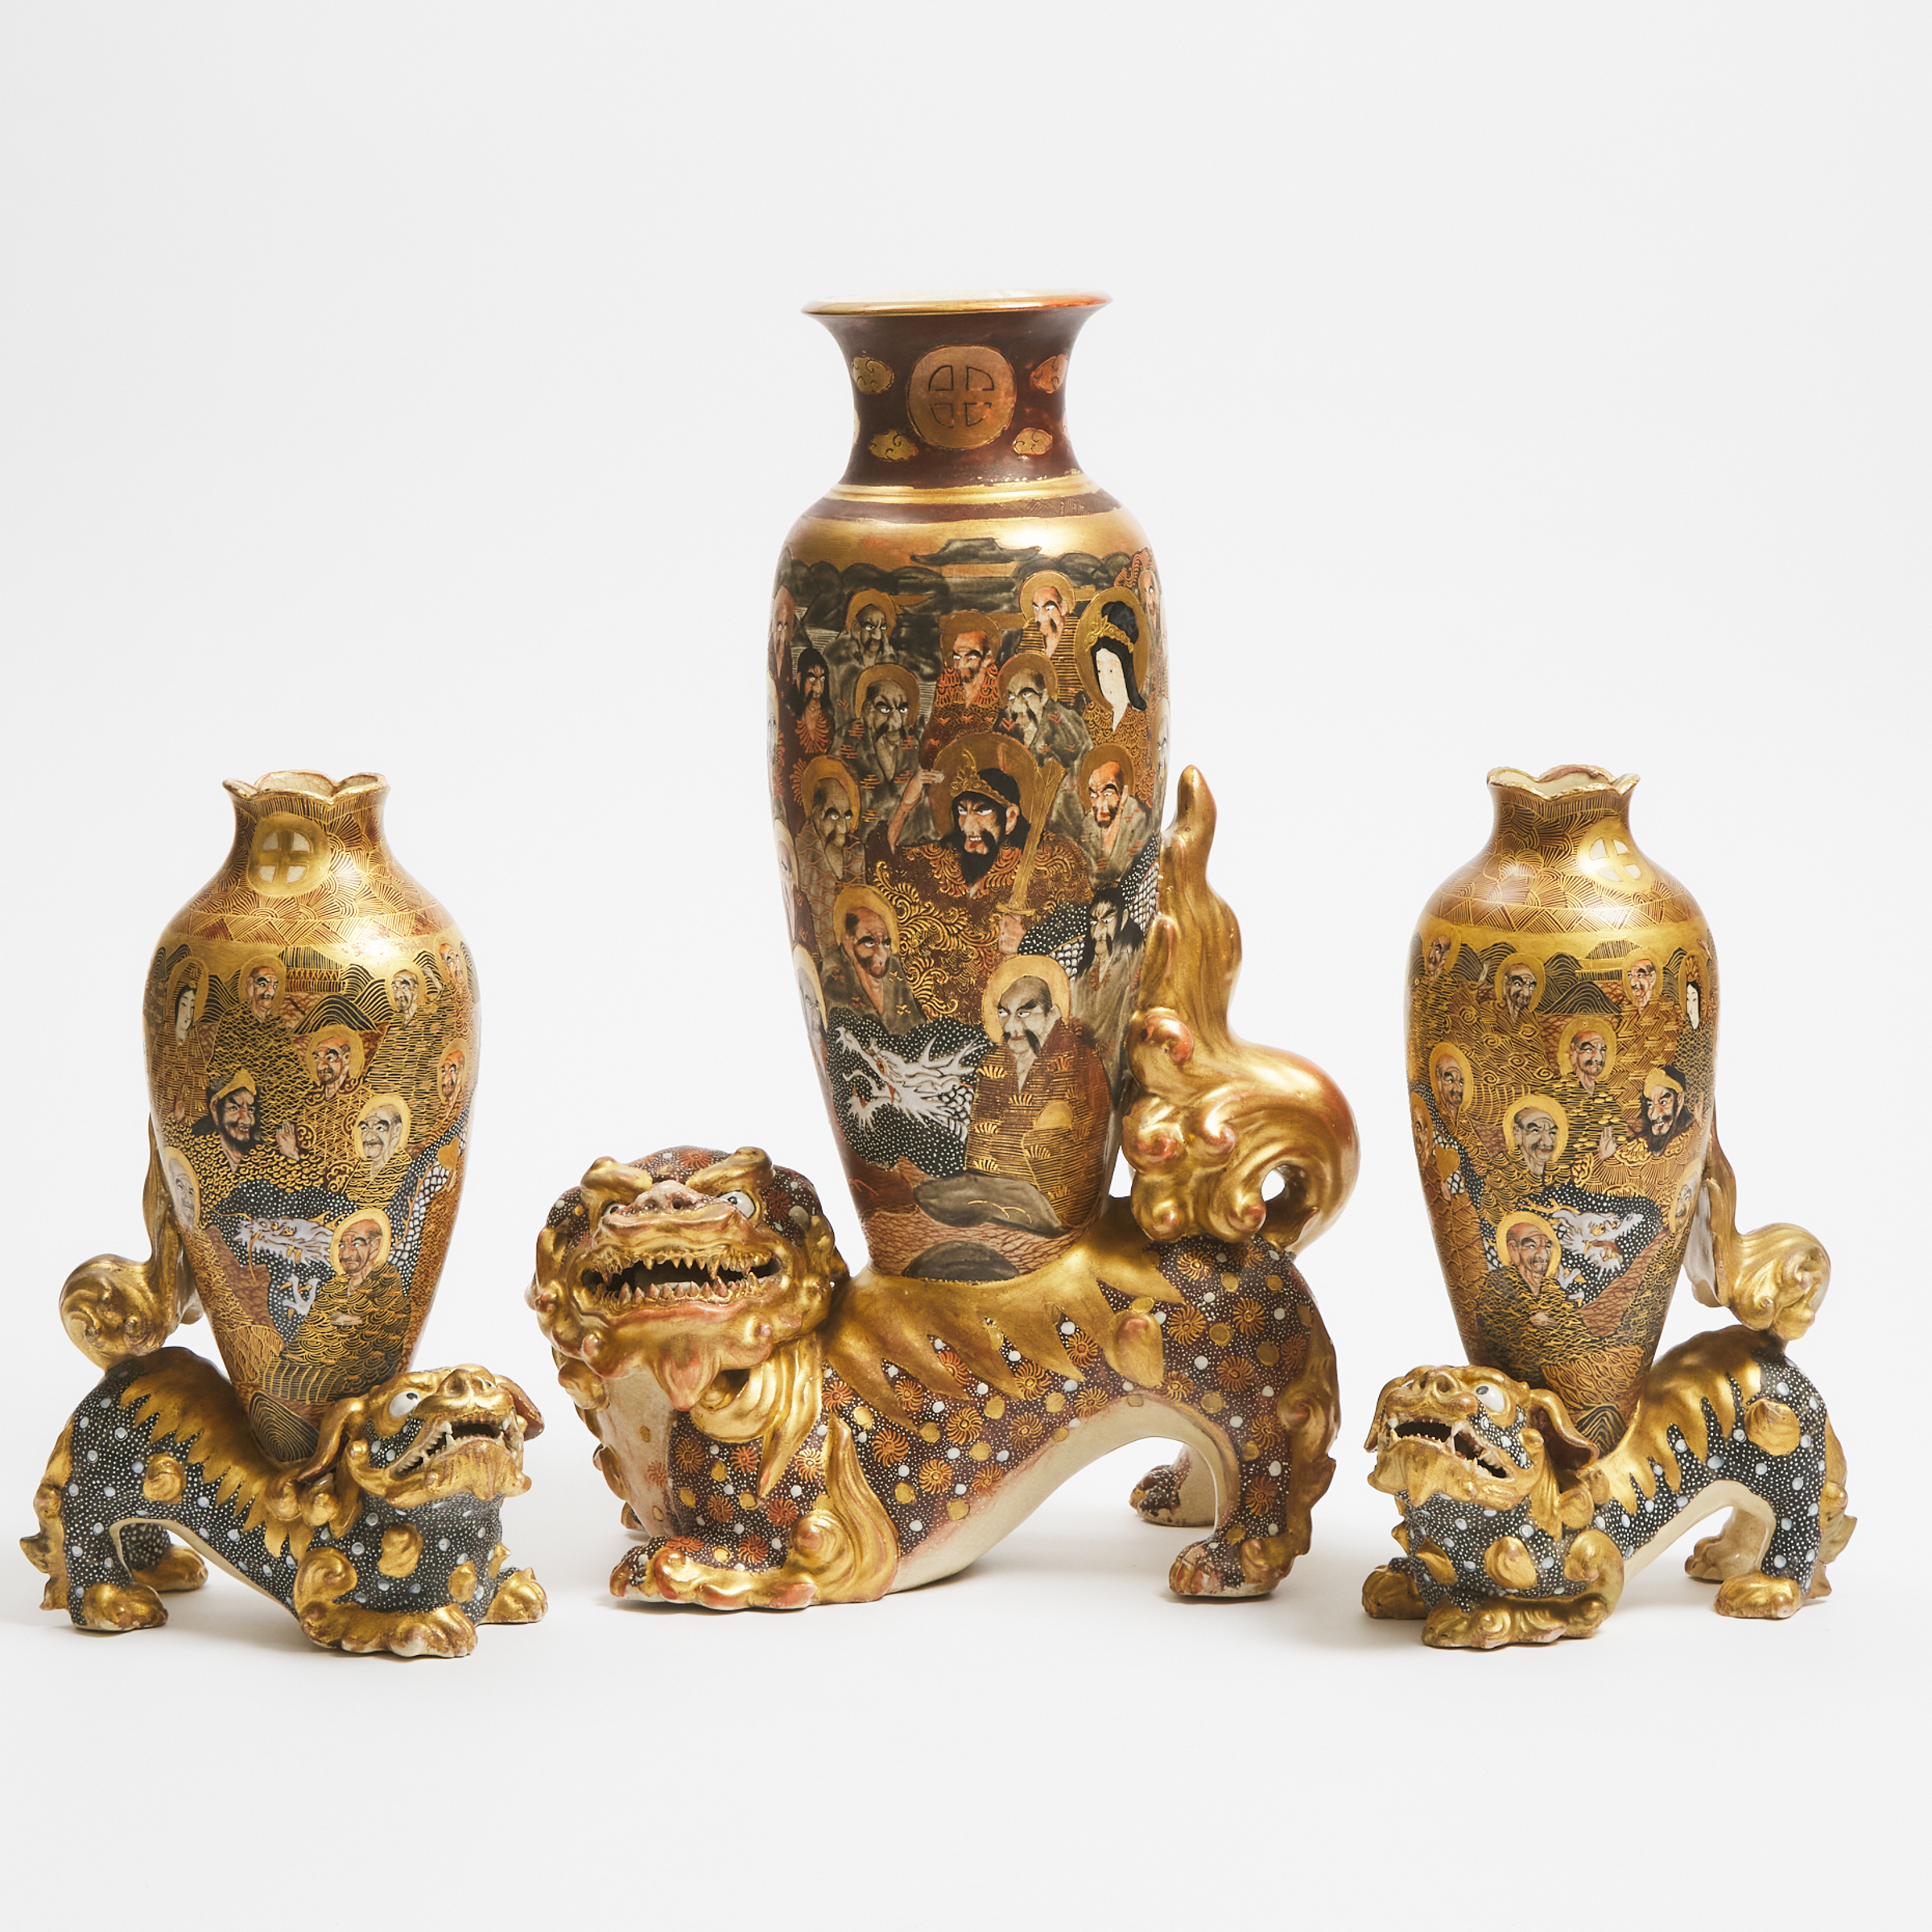 A Group of Three Large Satsuma 'Shishi' Vases, Meiji Period (1868-1912)